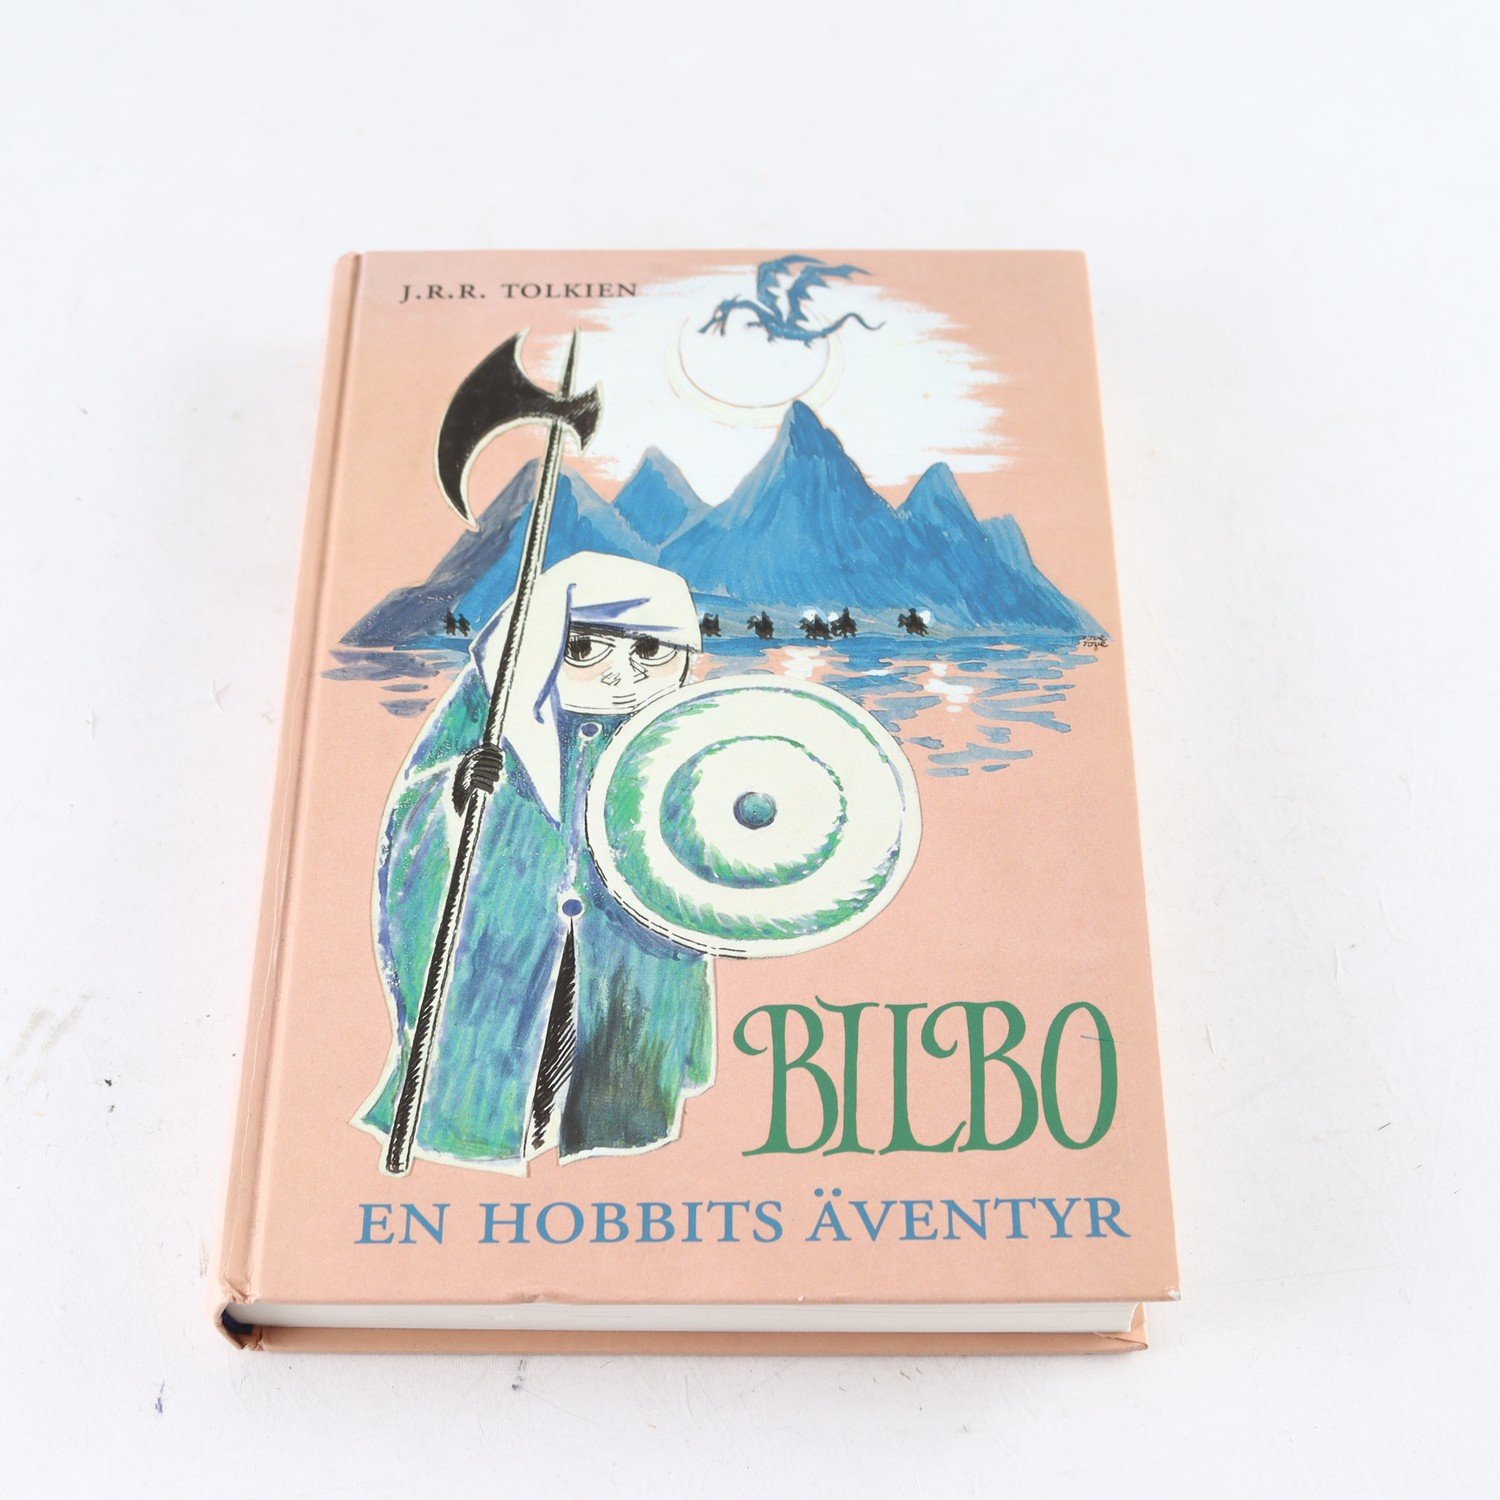 J.R.R. Tolkien, Bilbo, En Hobbits äventyr, illustrerad av Tove Jansson